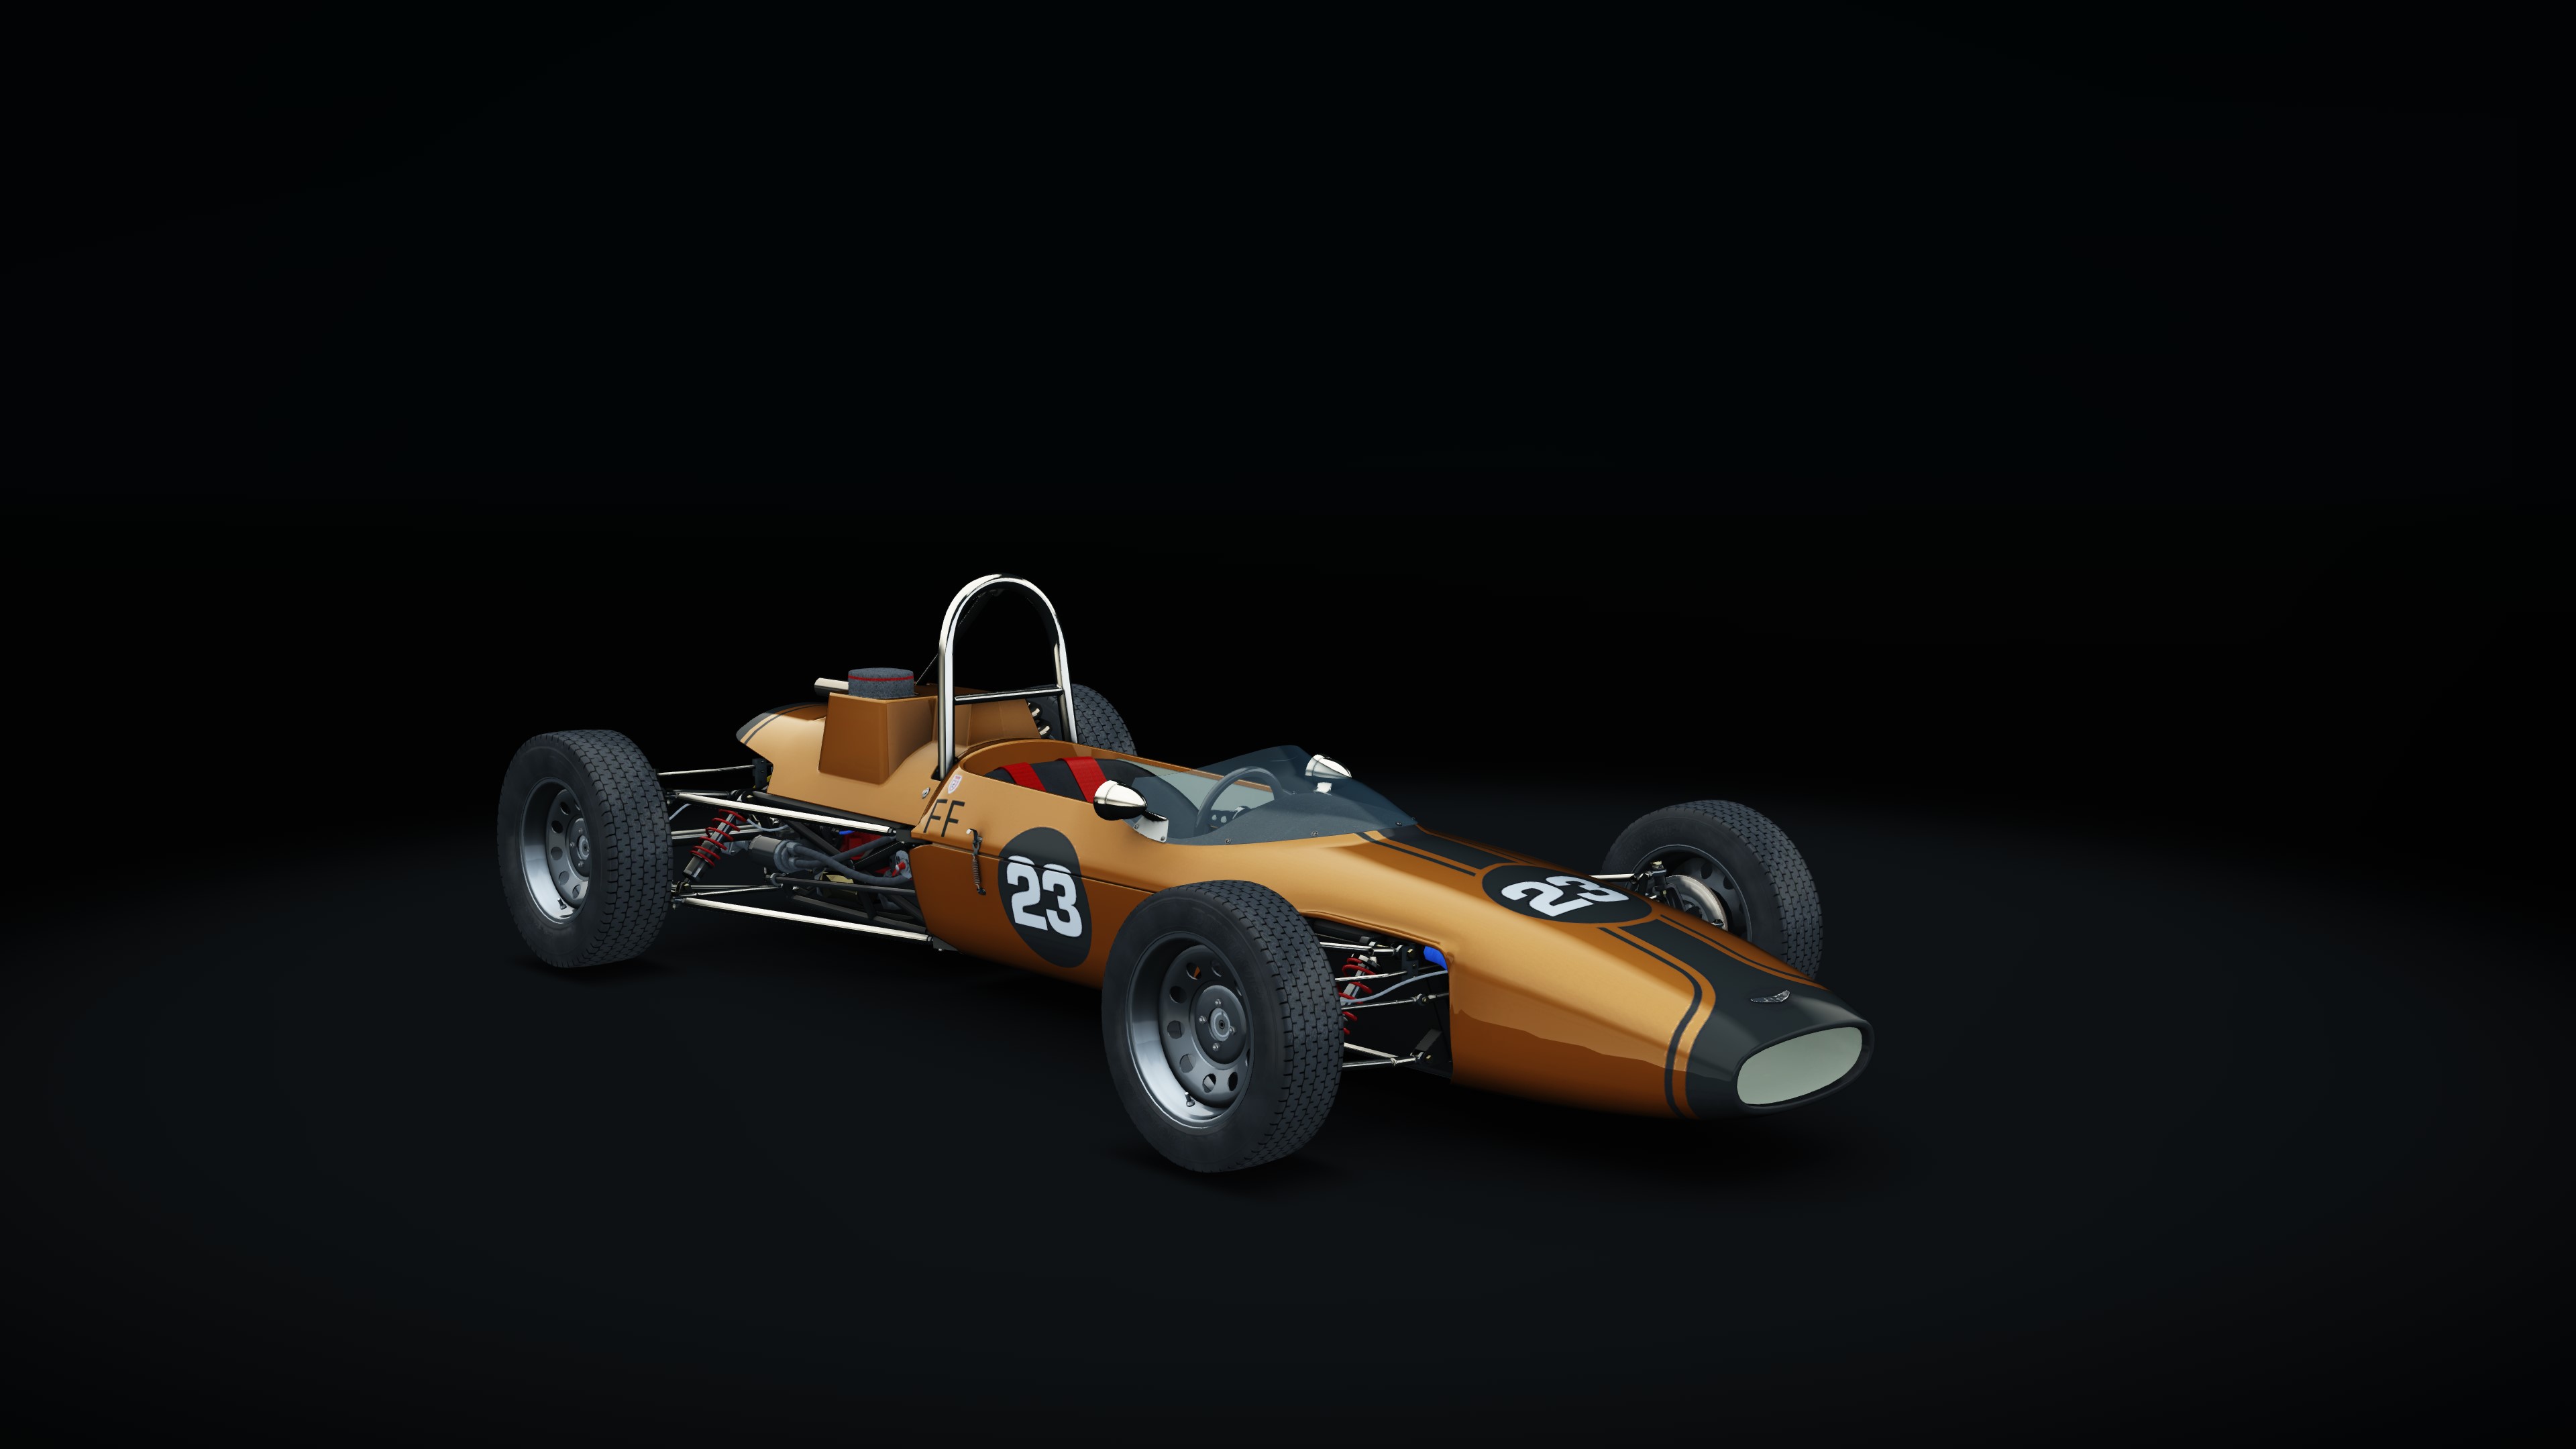 Russell-Alexis Mk. 14 Formula Ford, skin 23EHawke